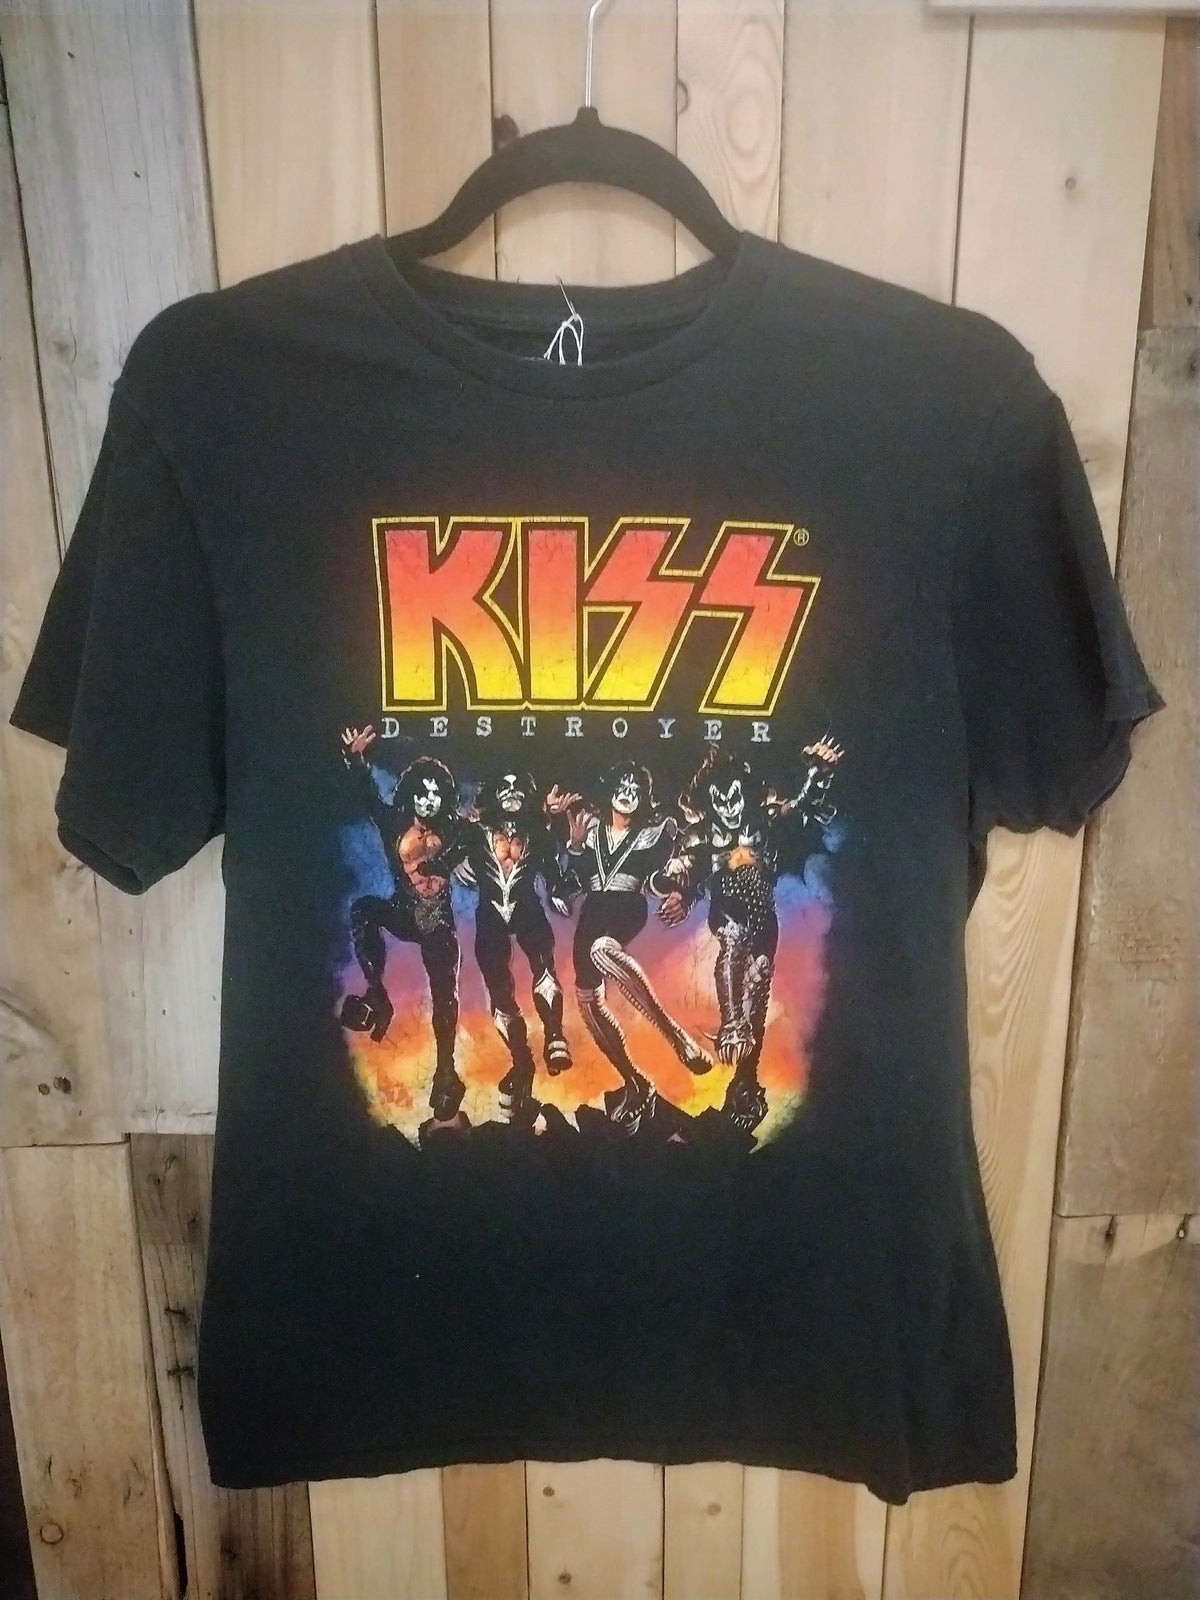 KISS "Destroyer" Official Merchandise T Shirt Size Medium